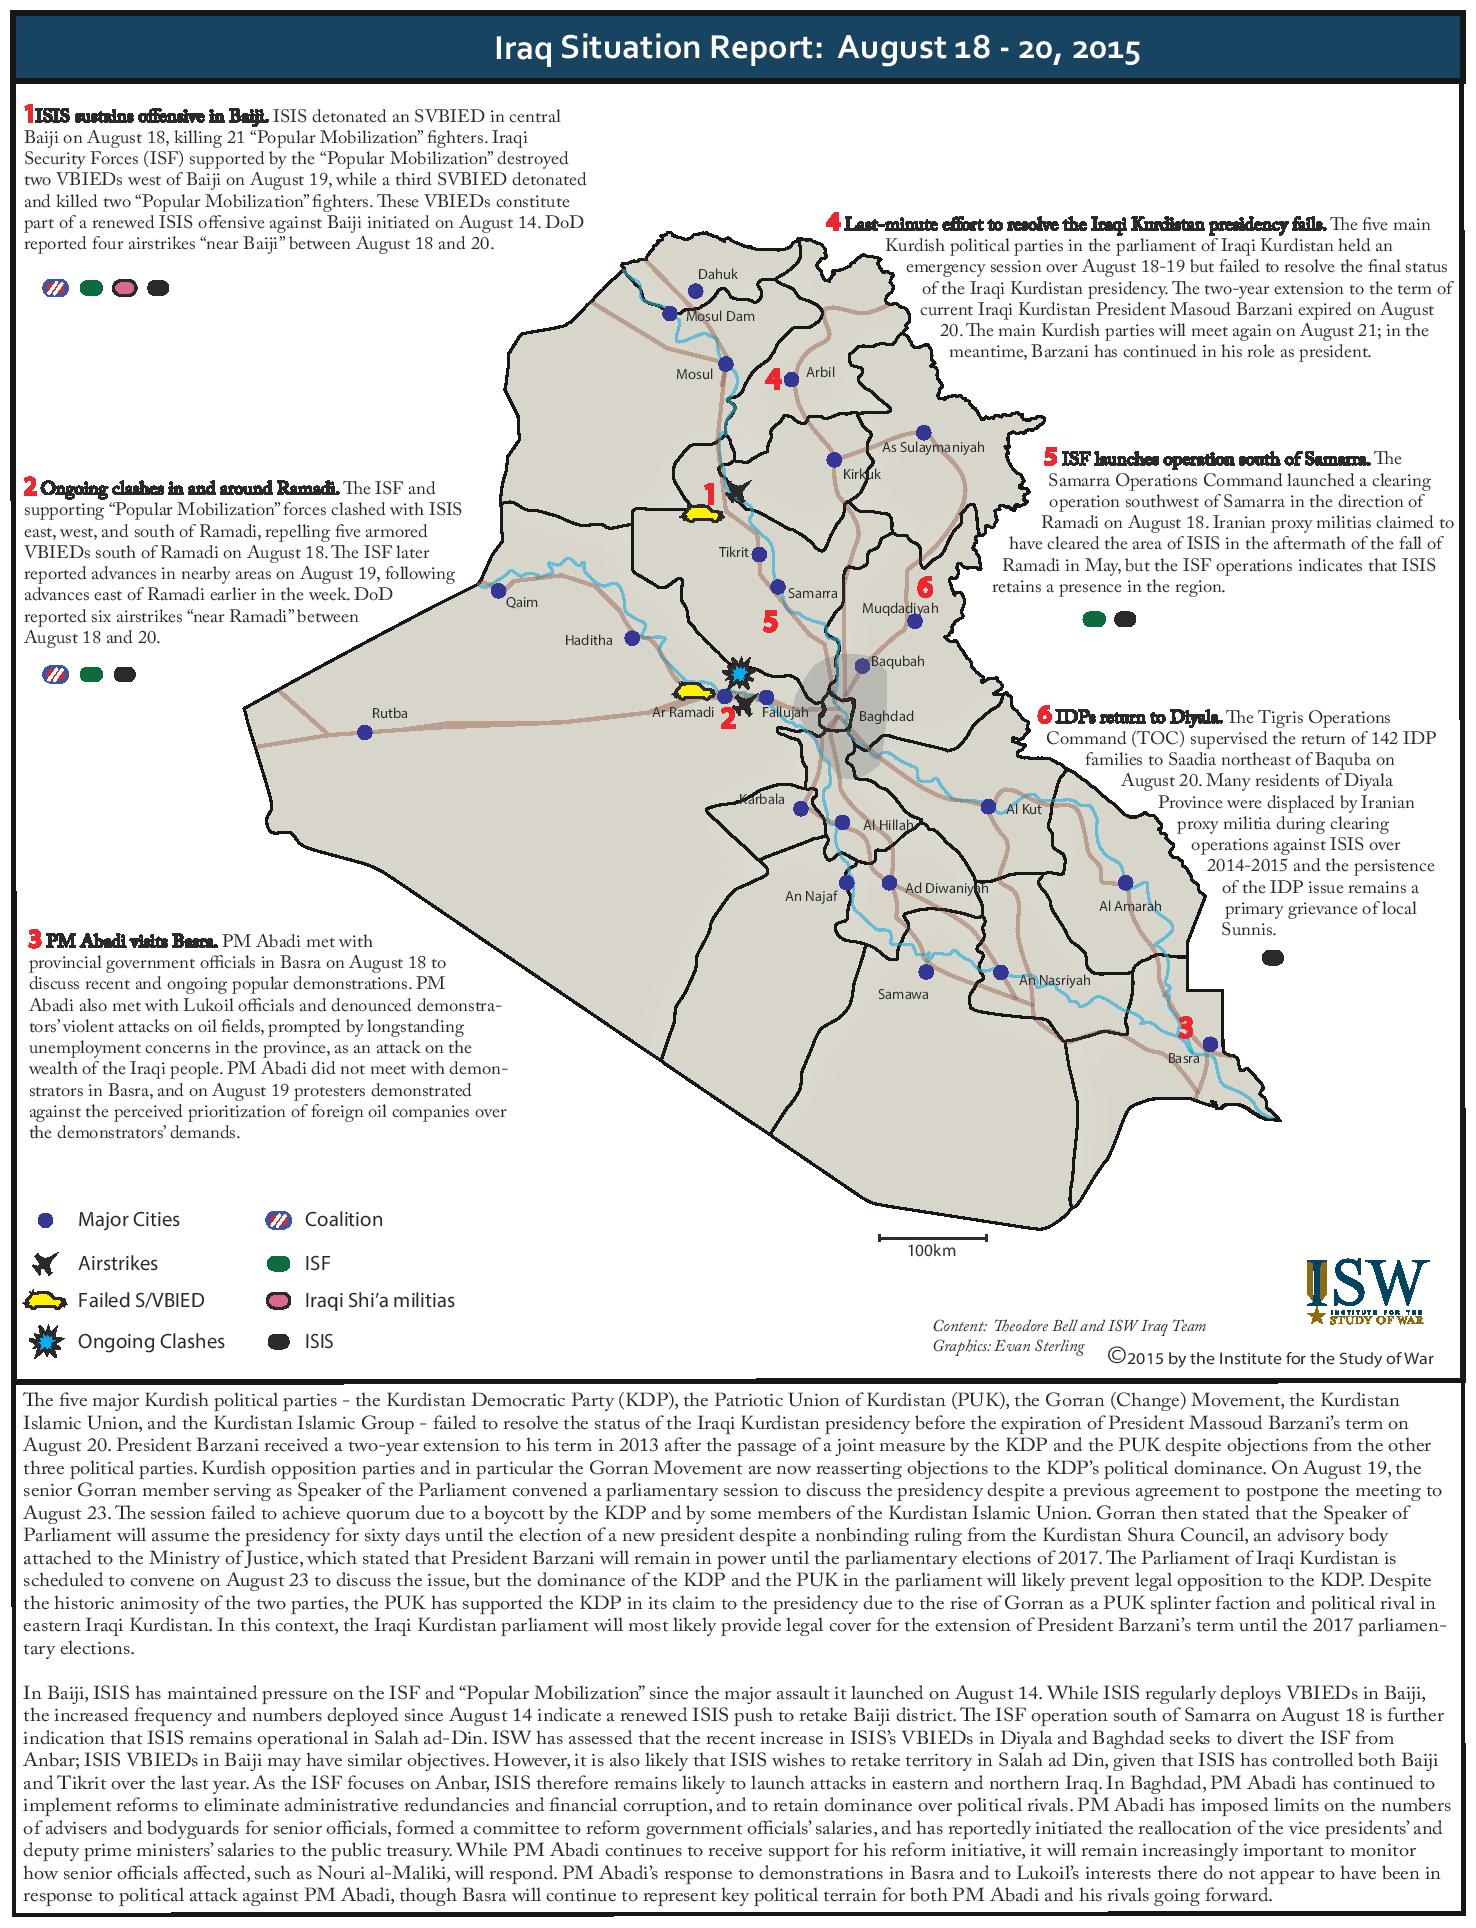 تقرير يكشف الوضع في العراق خلال الفترة 18-20 اب/2015